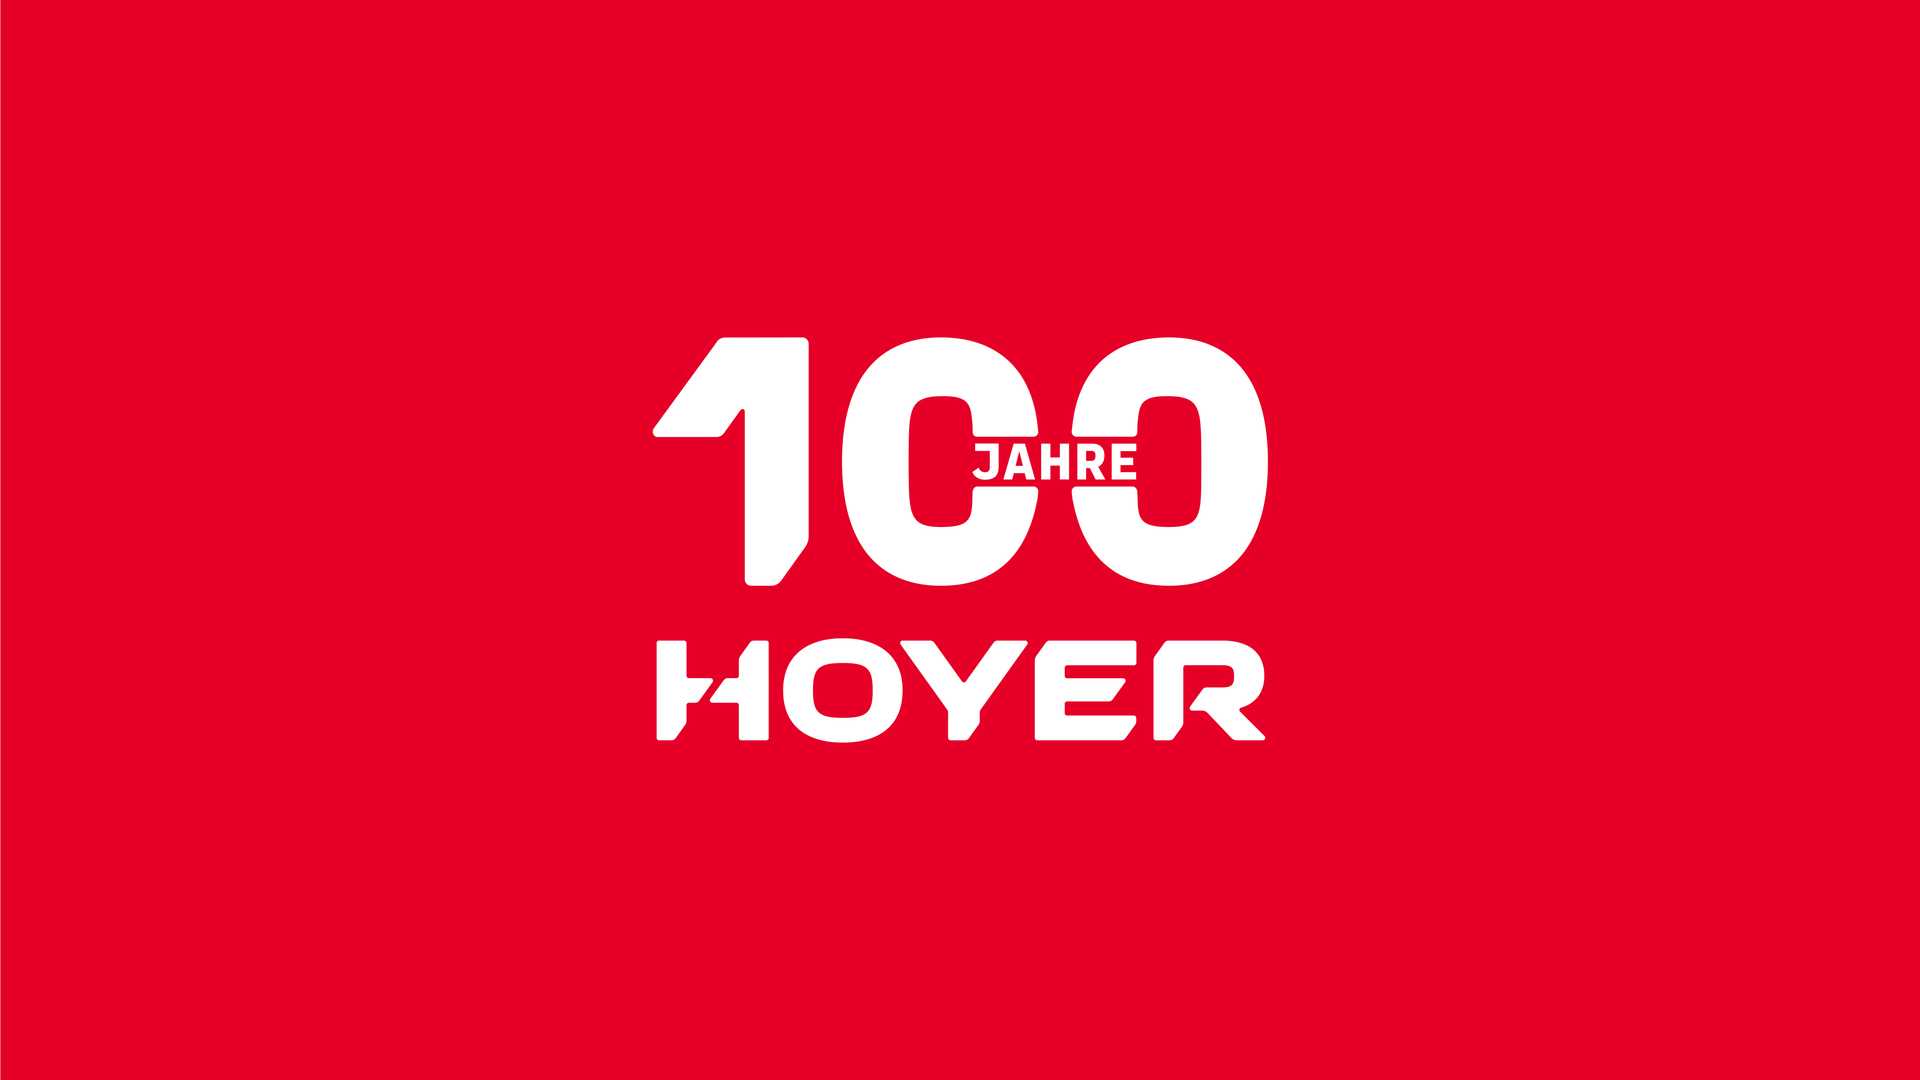 Hoyer wird 100 Jahre alt